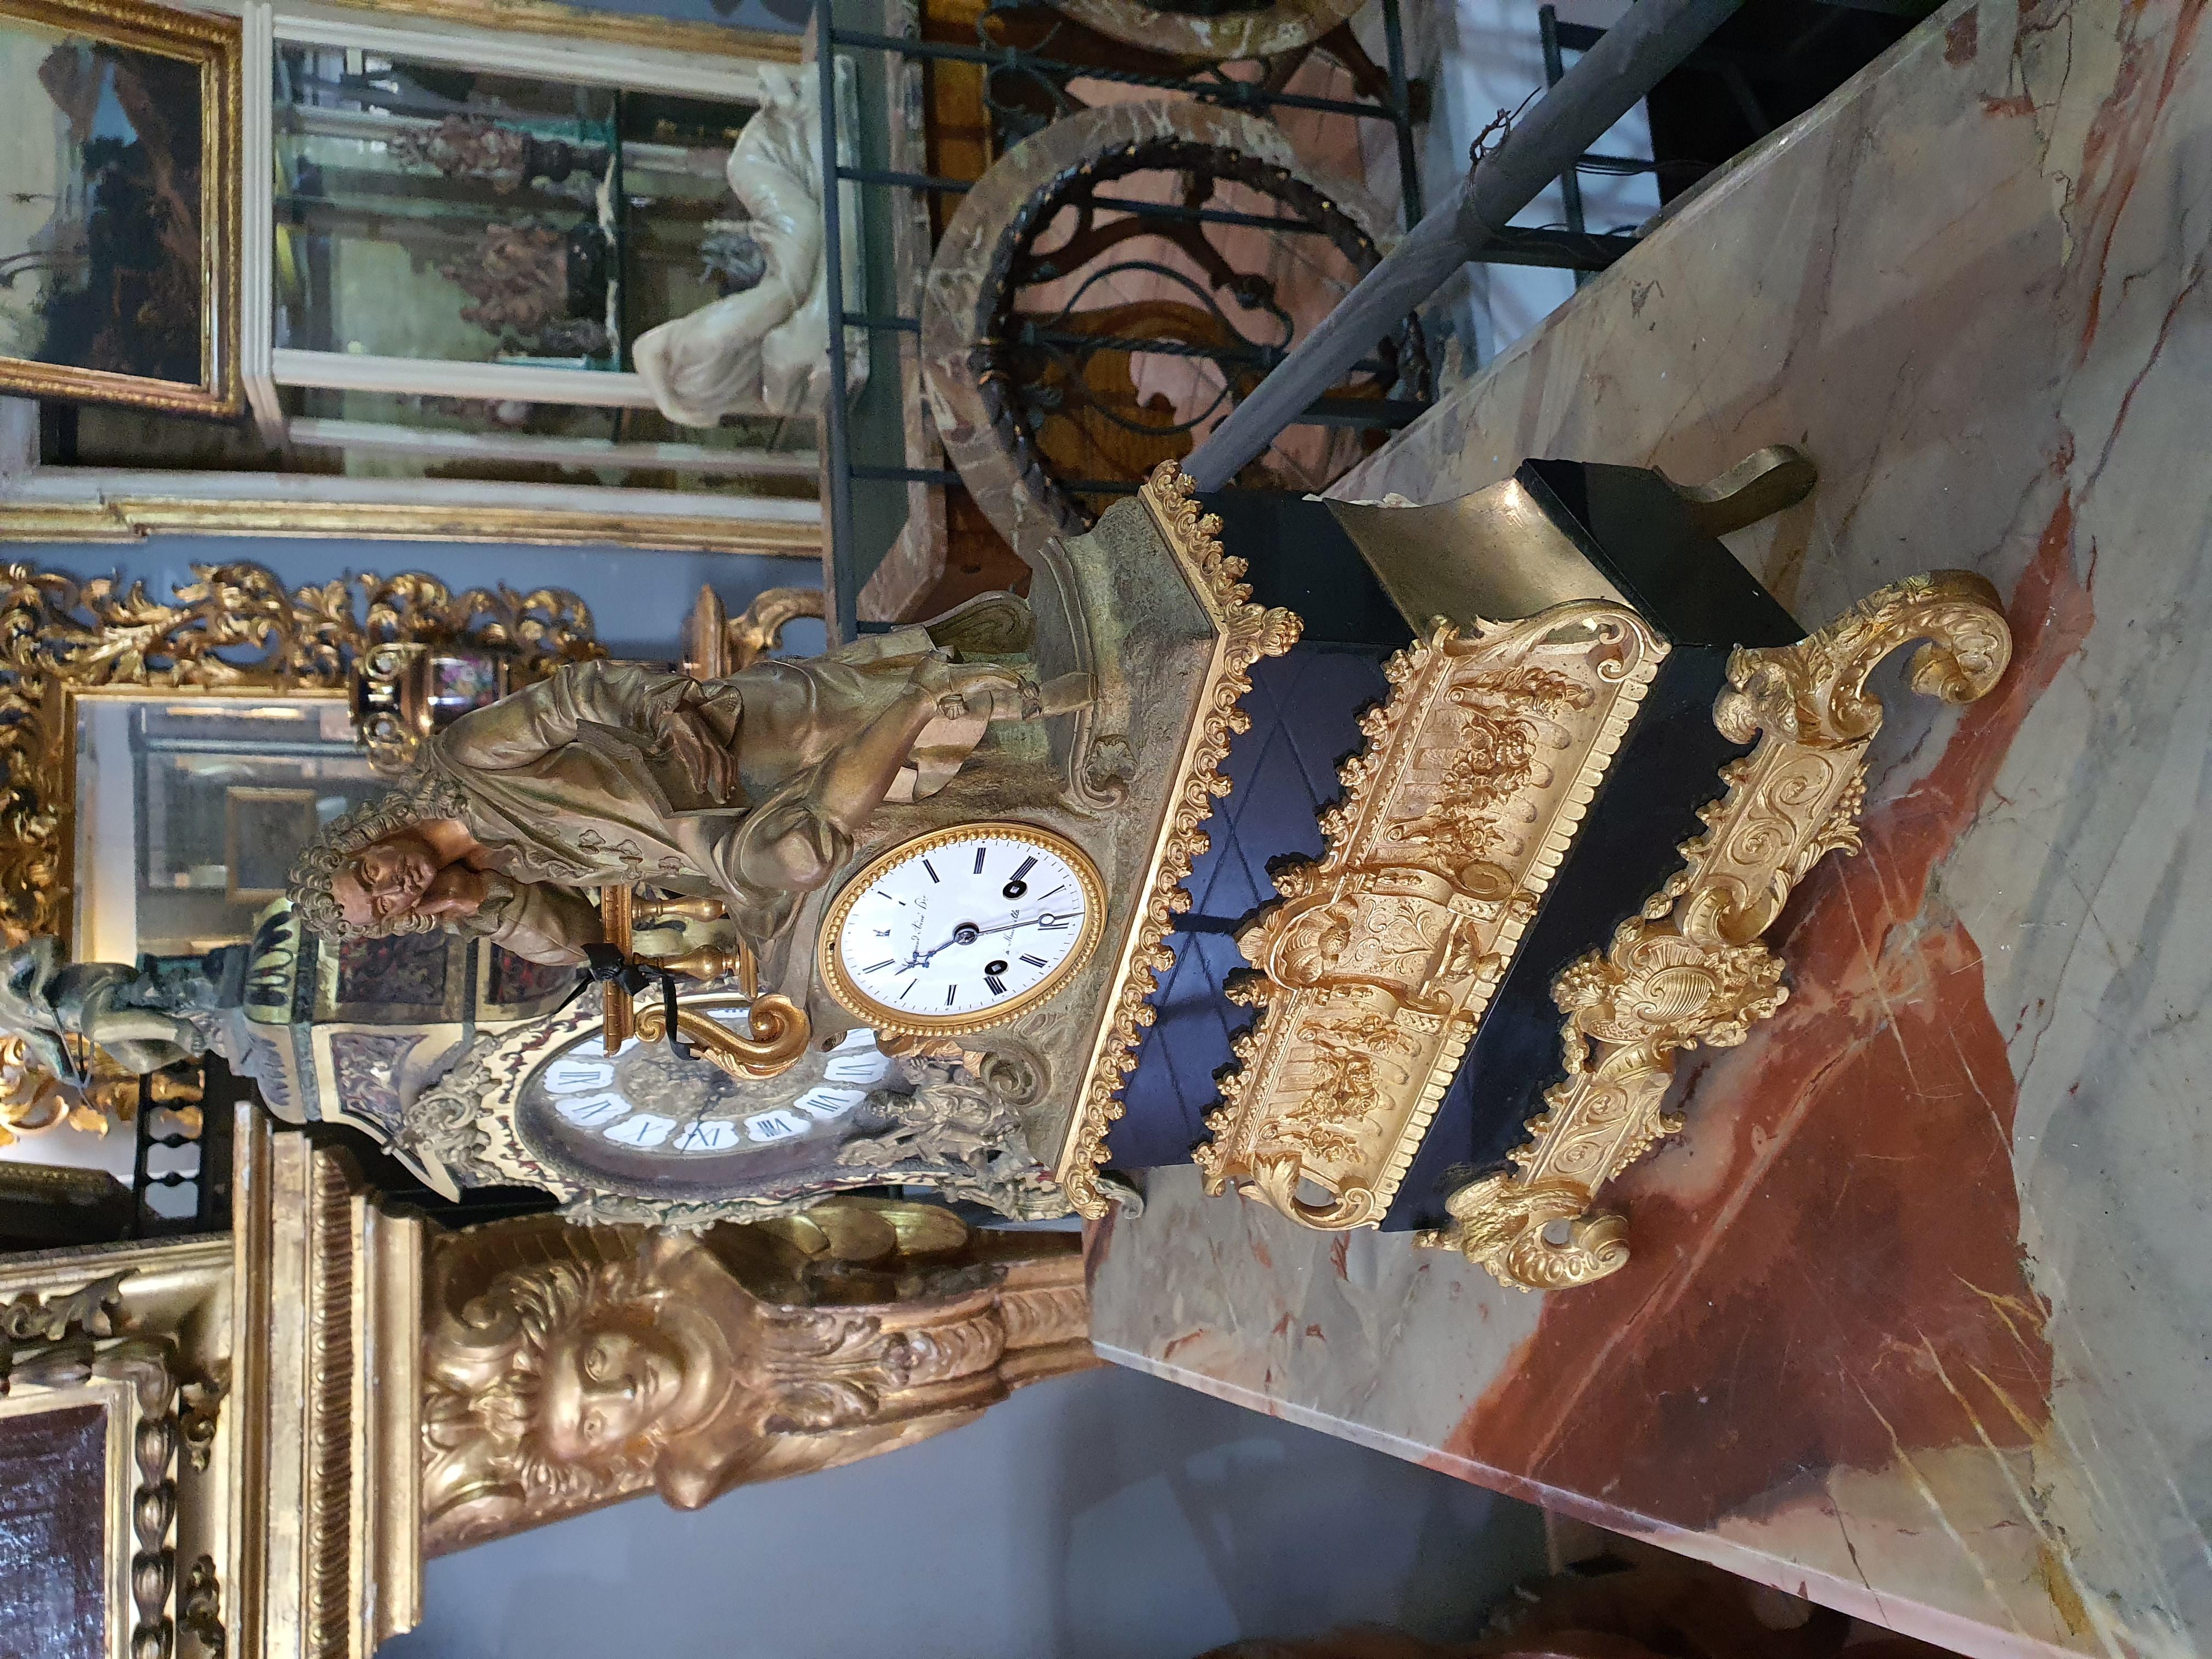 Die Uhr besteht aus einer Struktur mit verschiedenen Ordnungen, abwechselnd aus schwarzem Marmor und vergoldeter Bronze, auf deren Spitze die patinierte Bronzeskulptur eines Mannes steht, der in seine Lektüre vertieft ist, wahrscheinlich Voltaire.